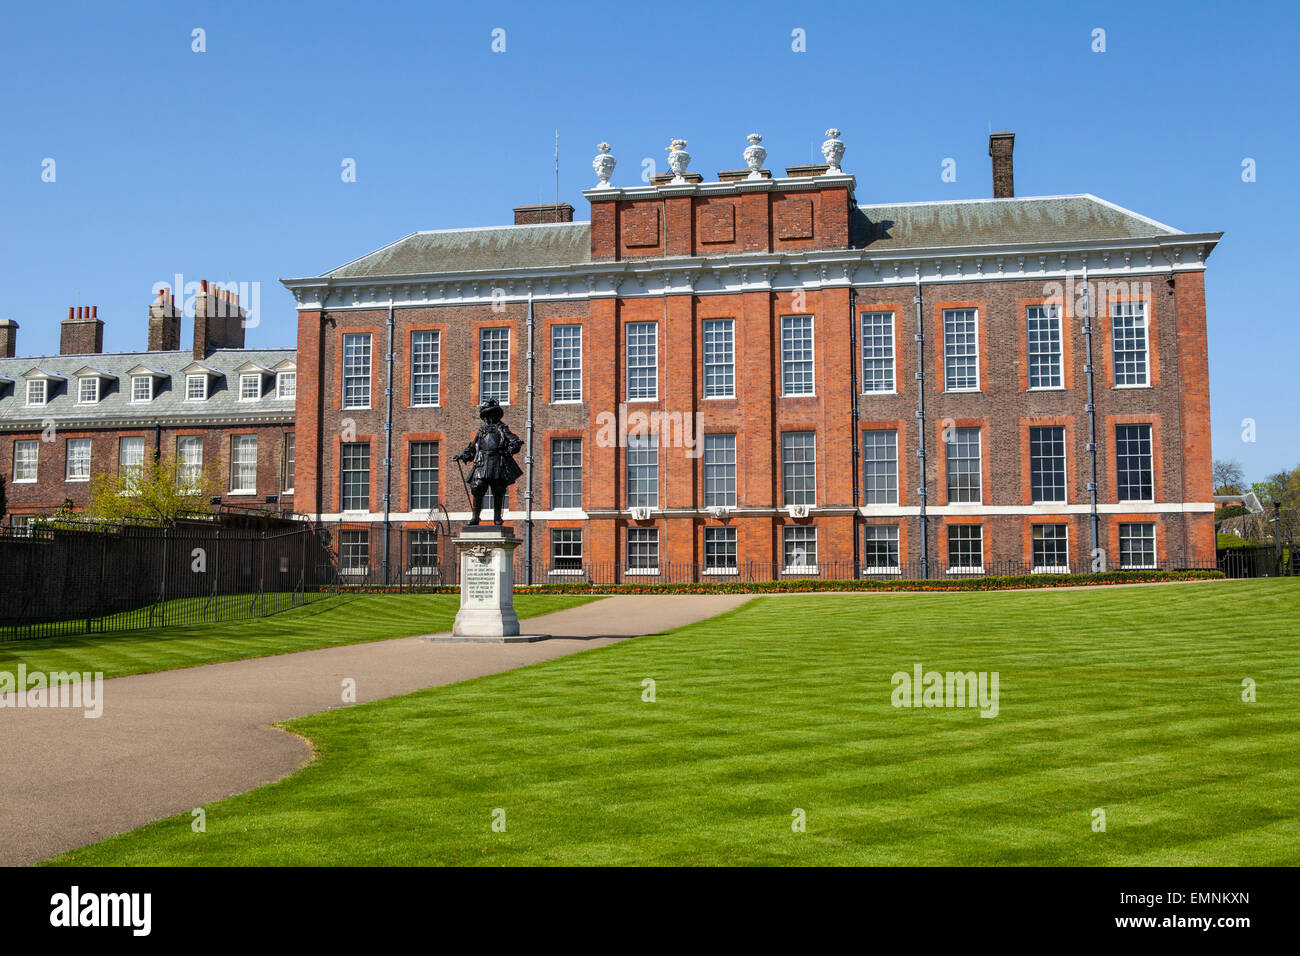 Una vista del magnífico palacio de Kensington en Londres, con la estatua del Rey Guillermo III en el primer plano. Foto de stock